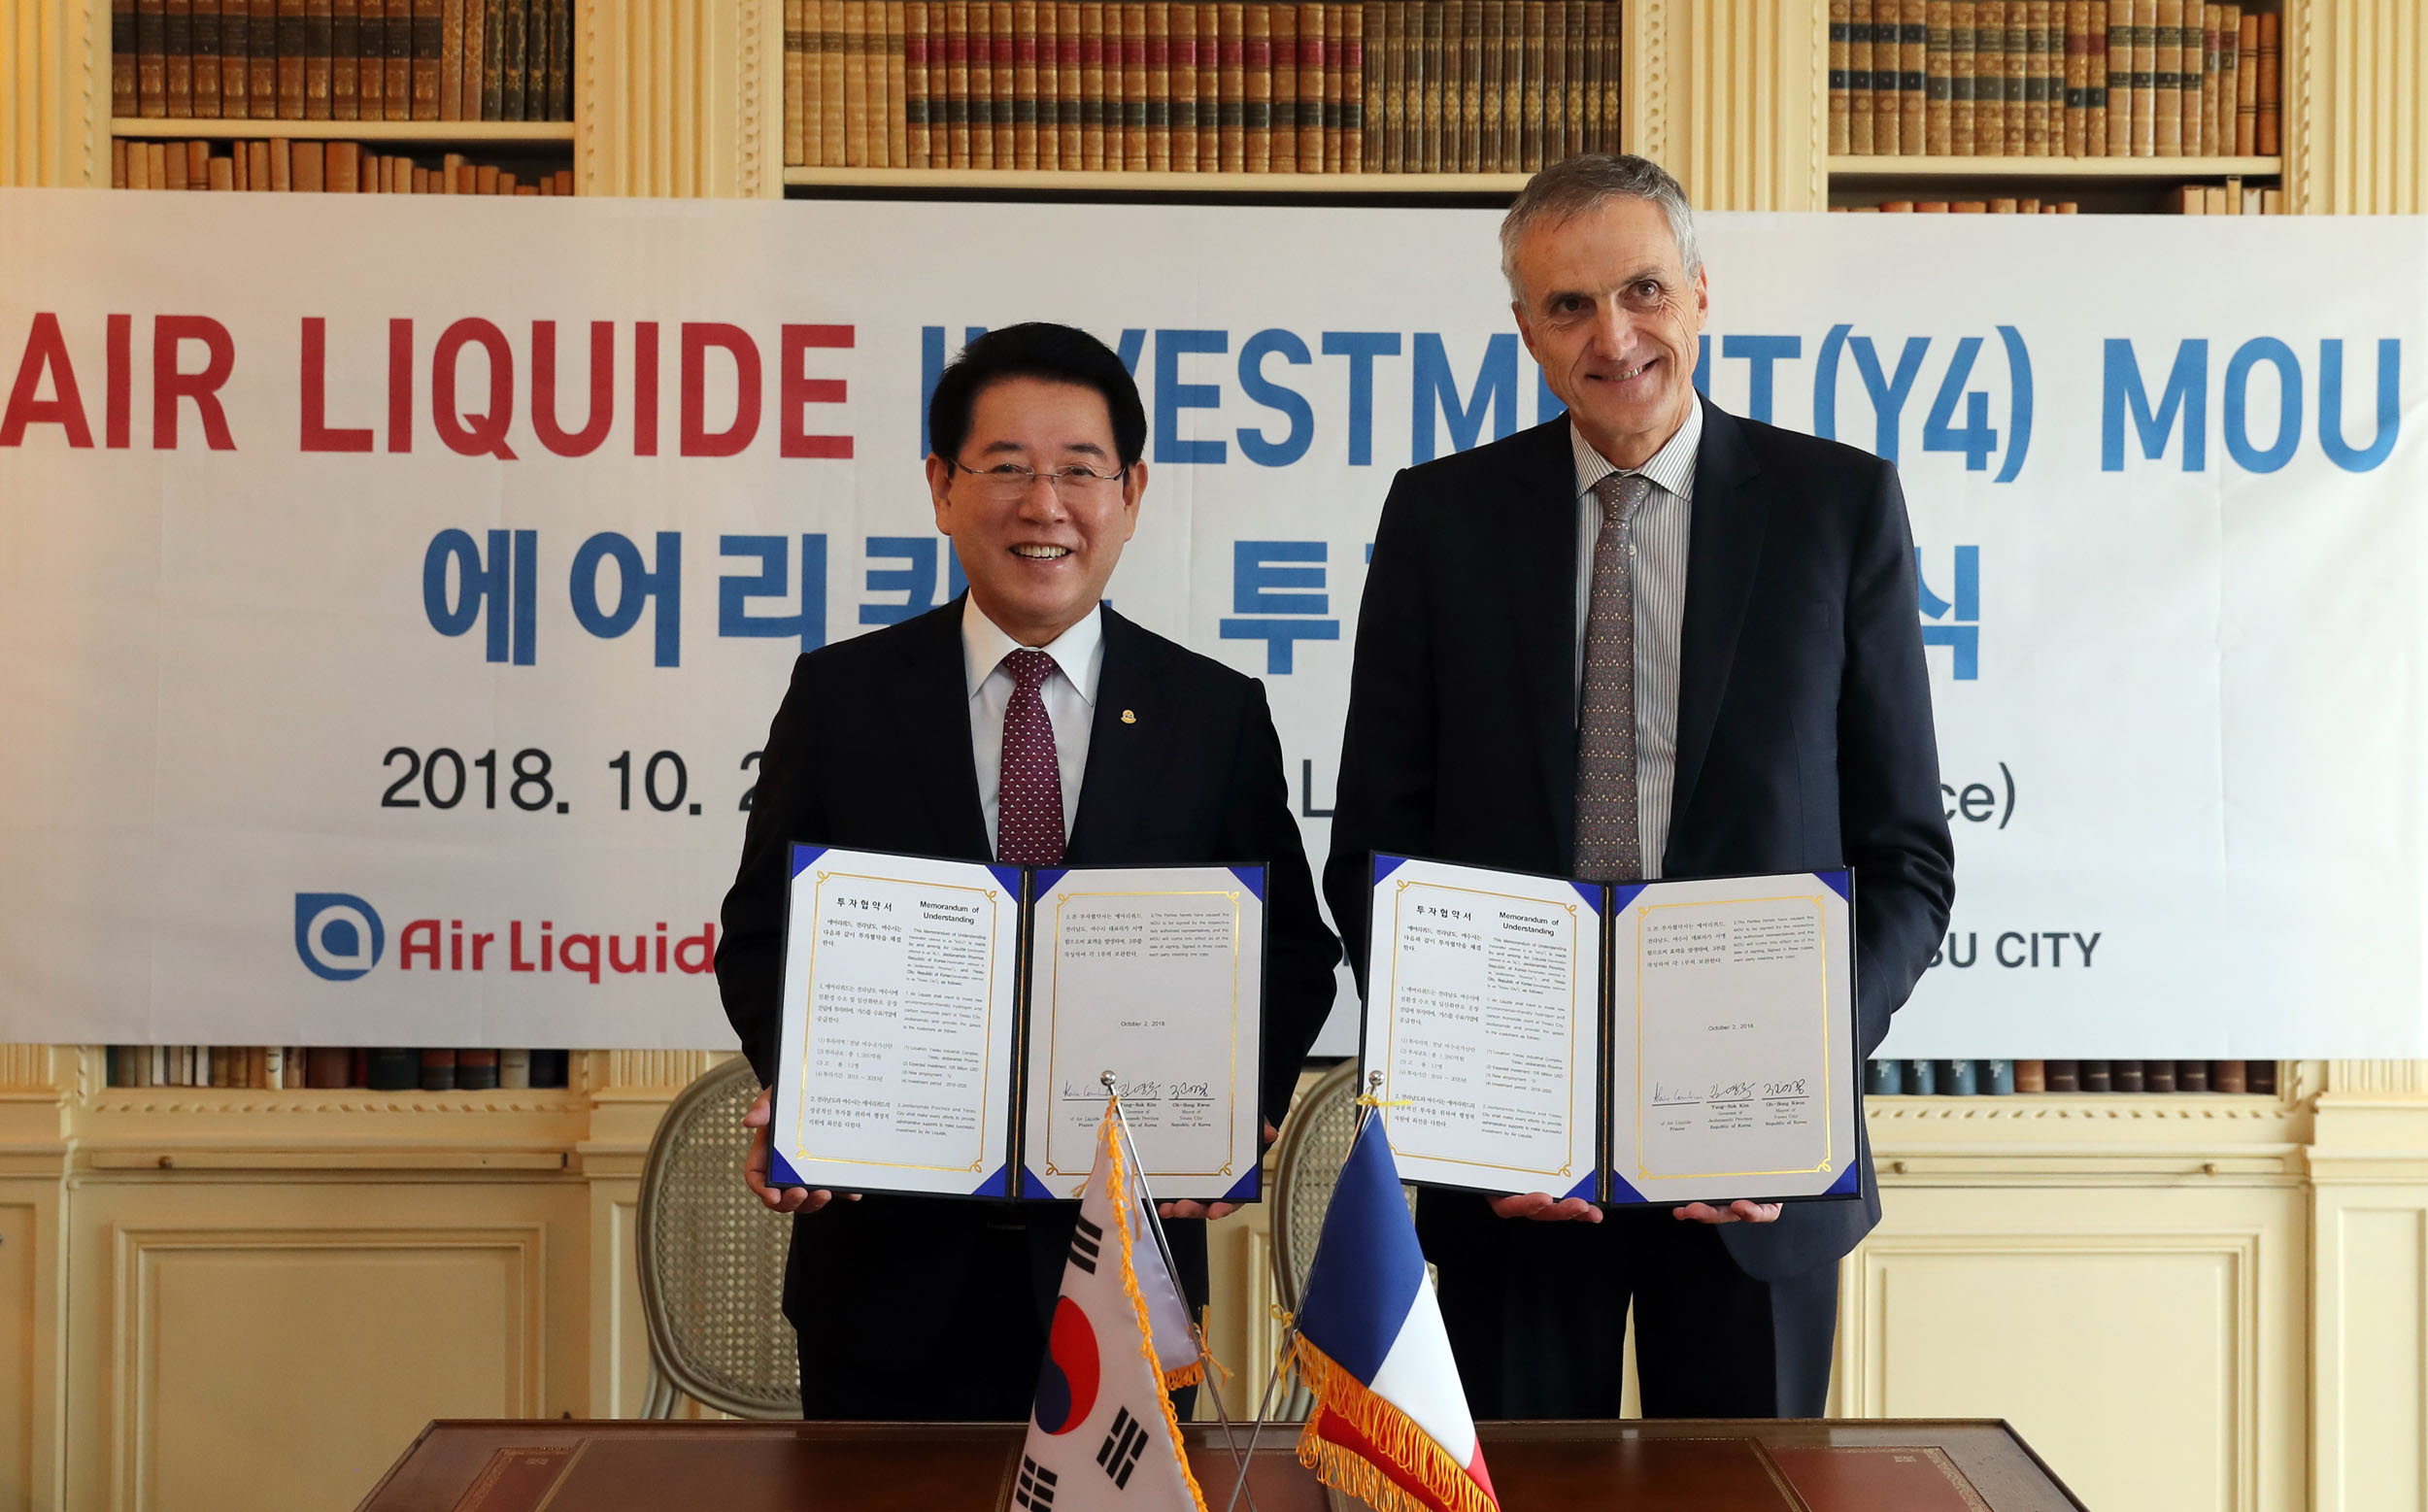 투자유치 위해 프랑스 방문, 에어리퀴드(Air Liquide) 사와 투자협약 체결2